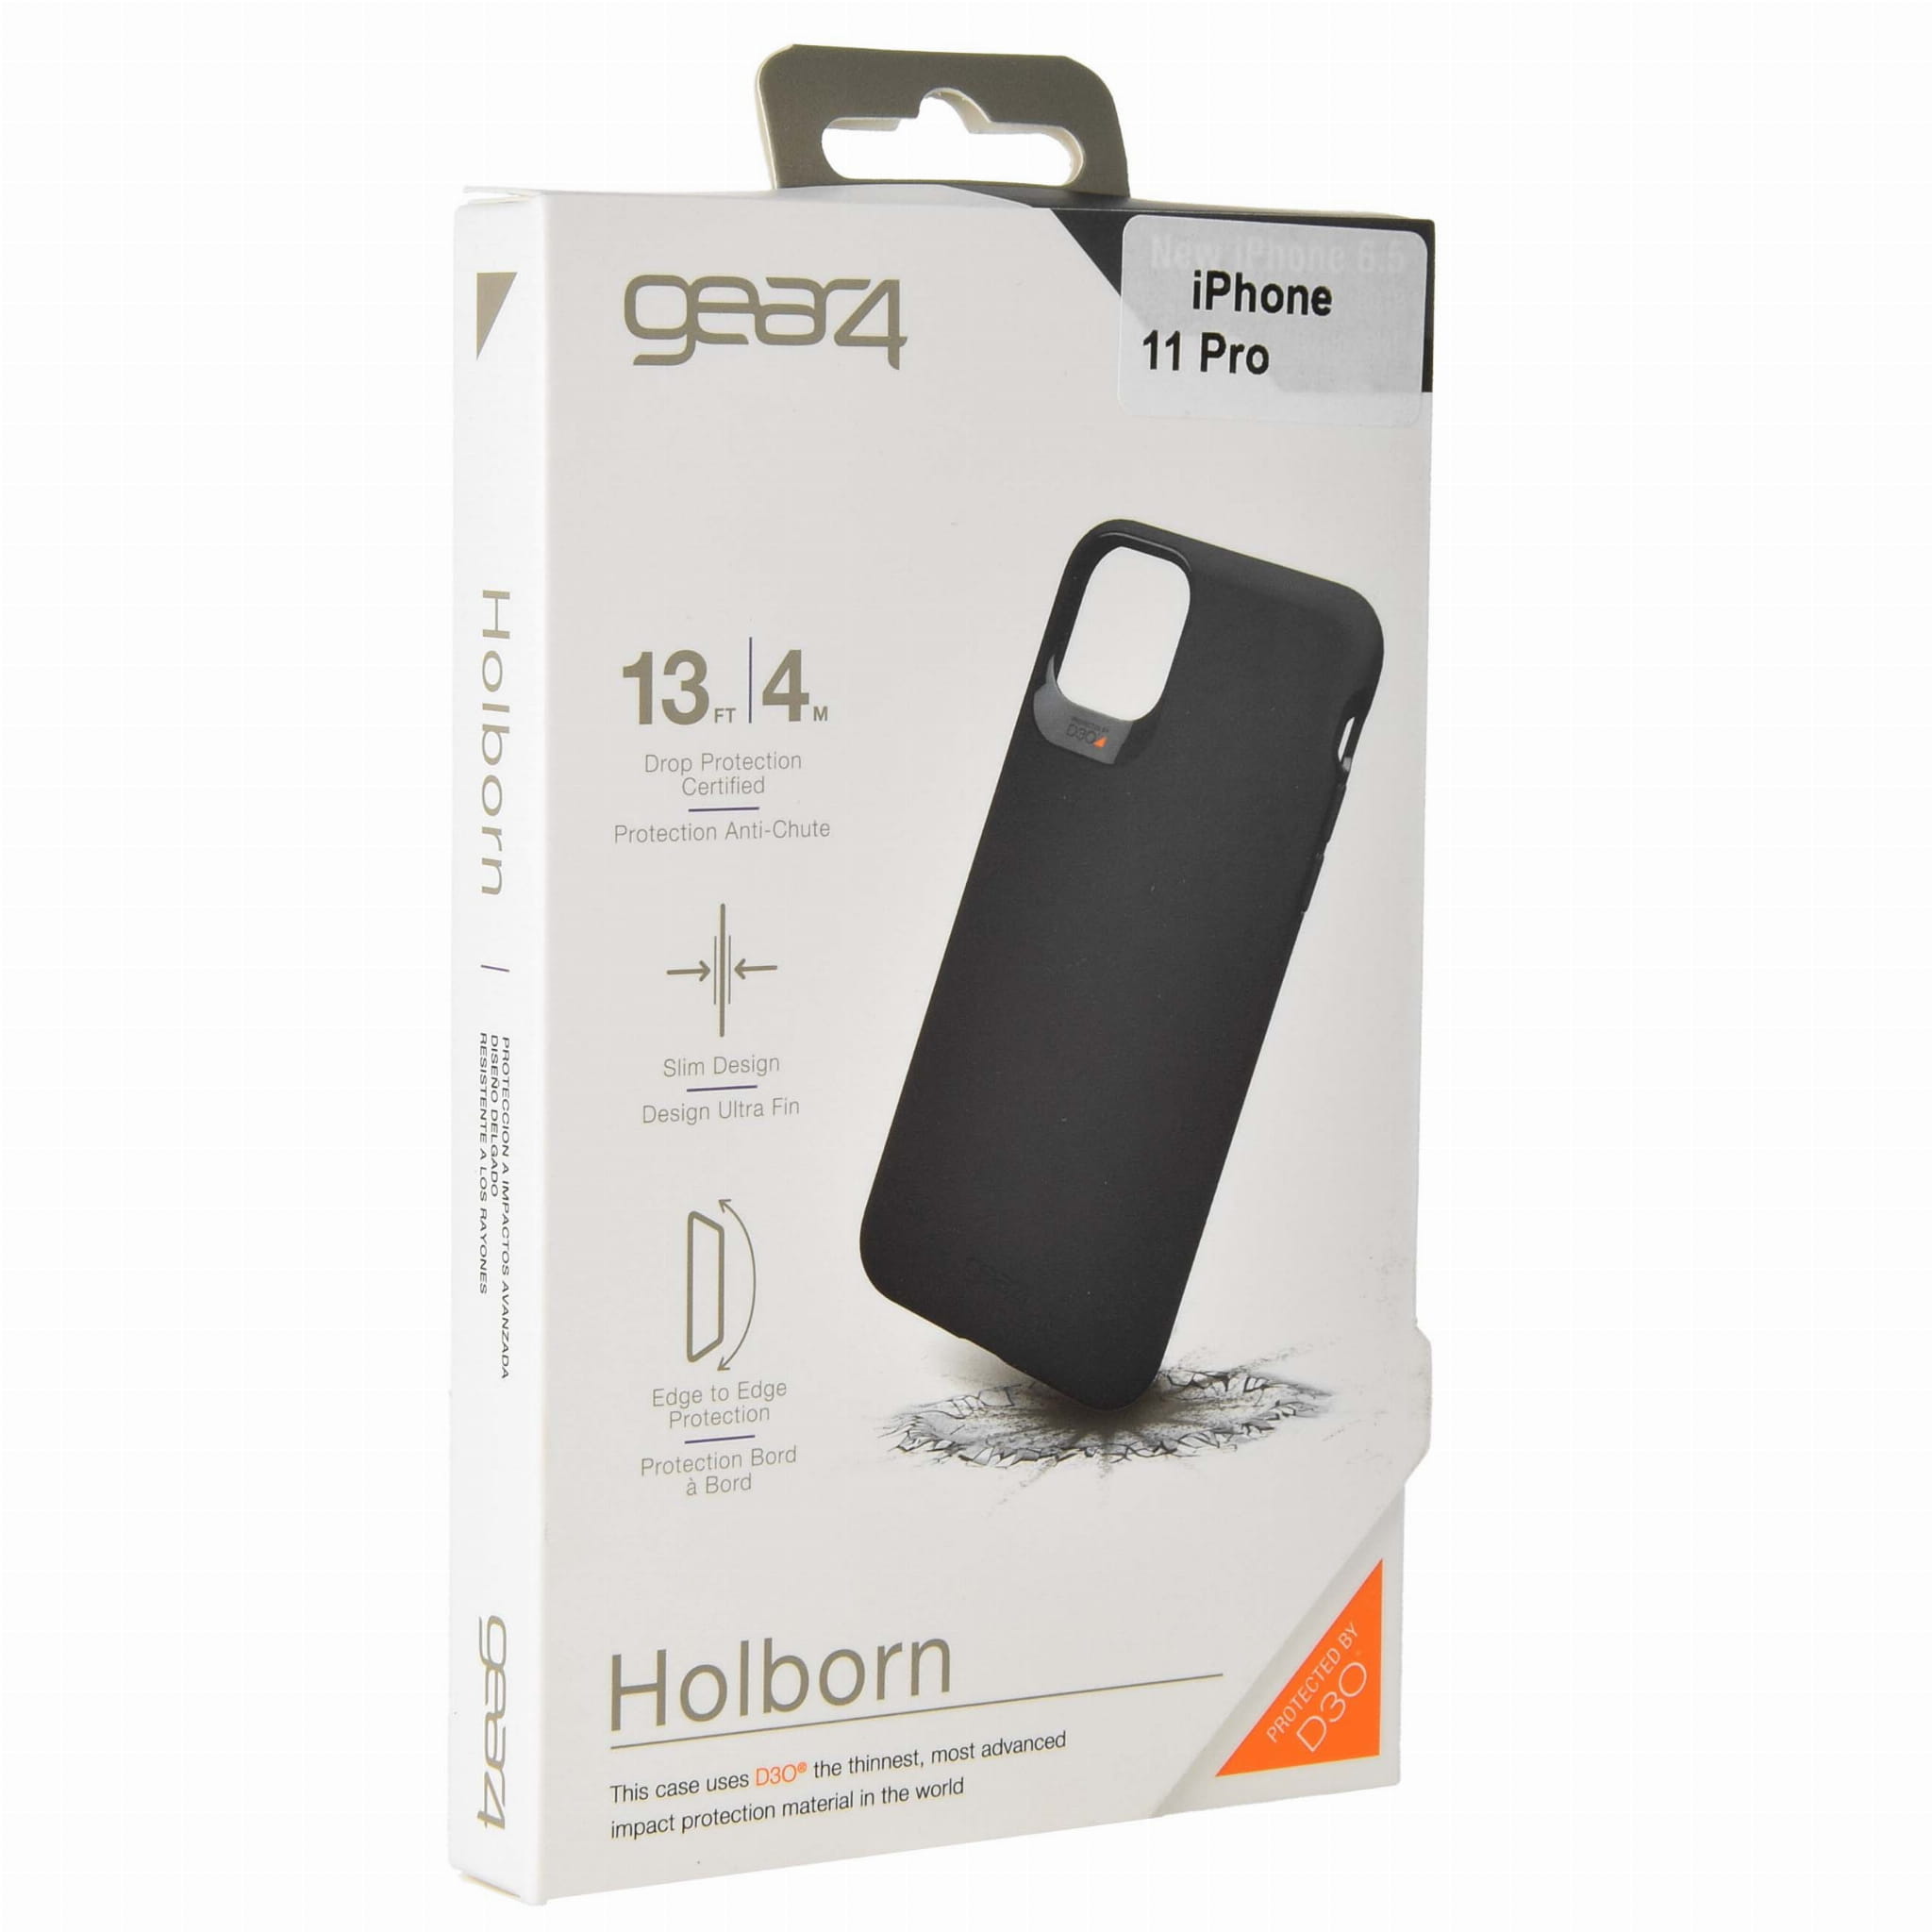 Schutzhülle Gear4 aus der Serie Holborn für iPhone 11 Pro, schwarz.